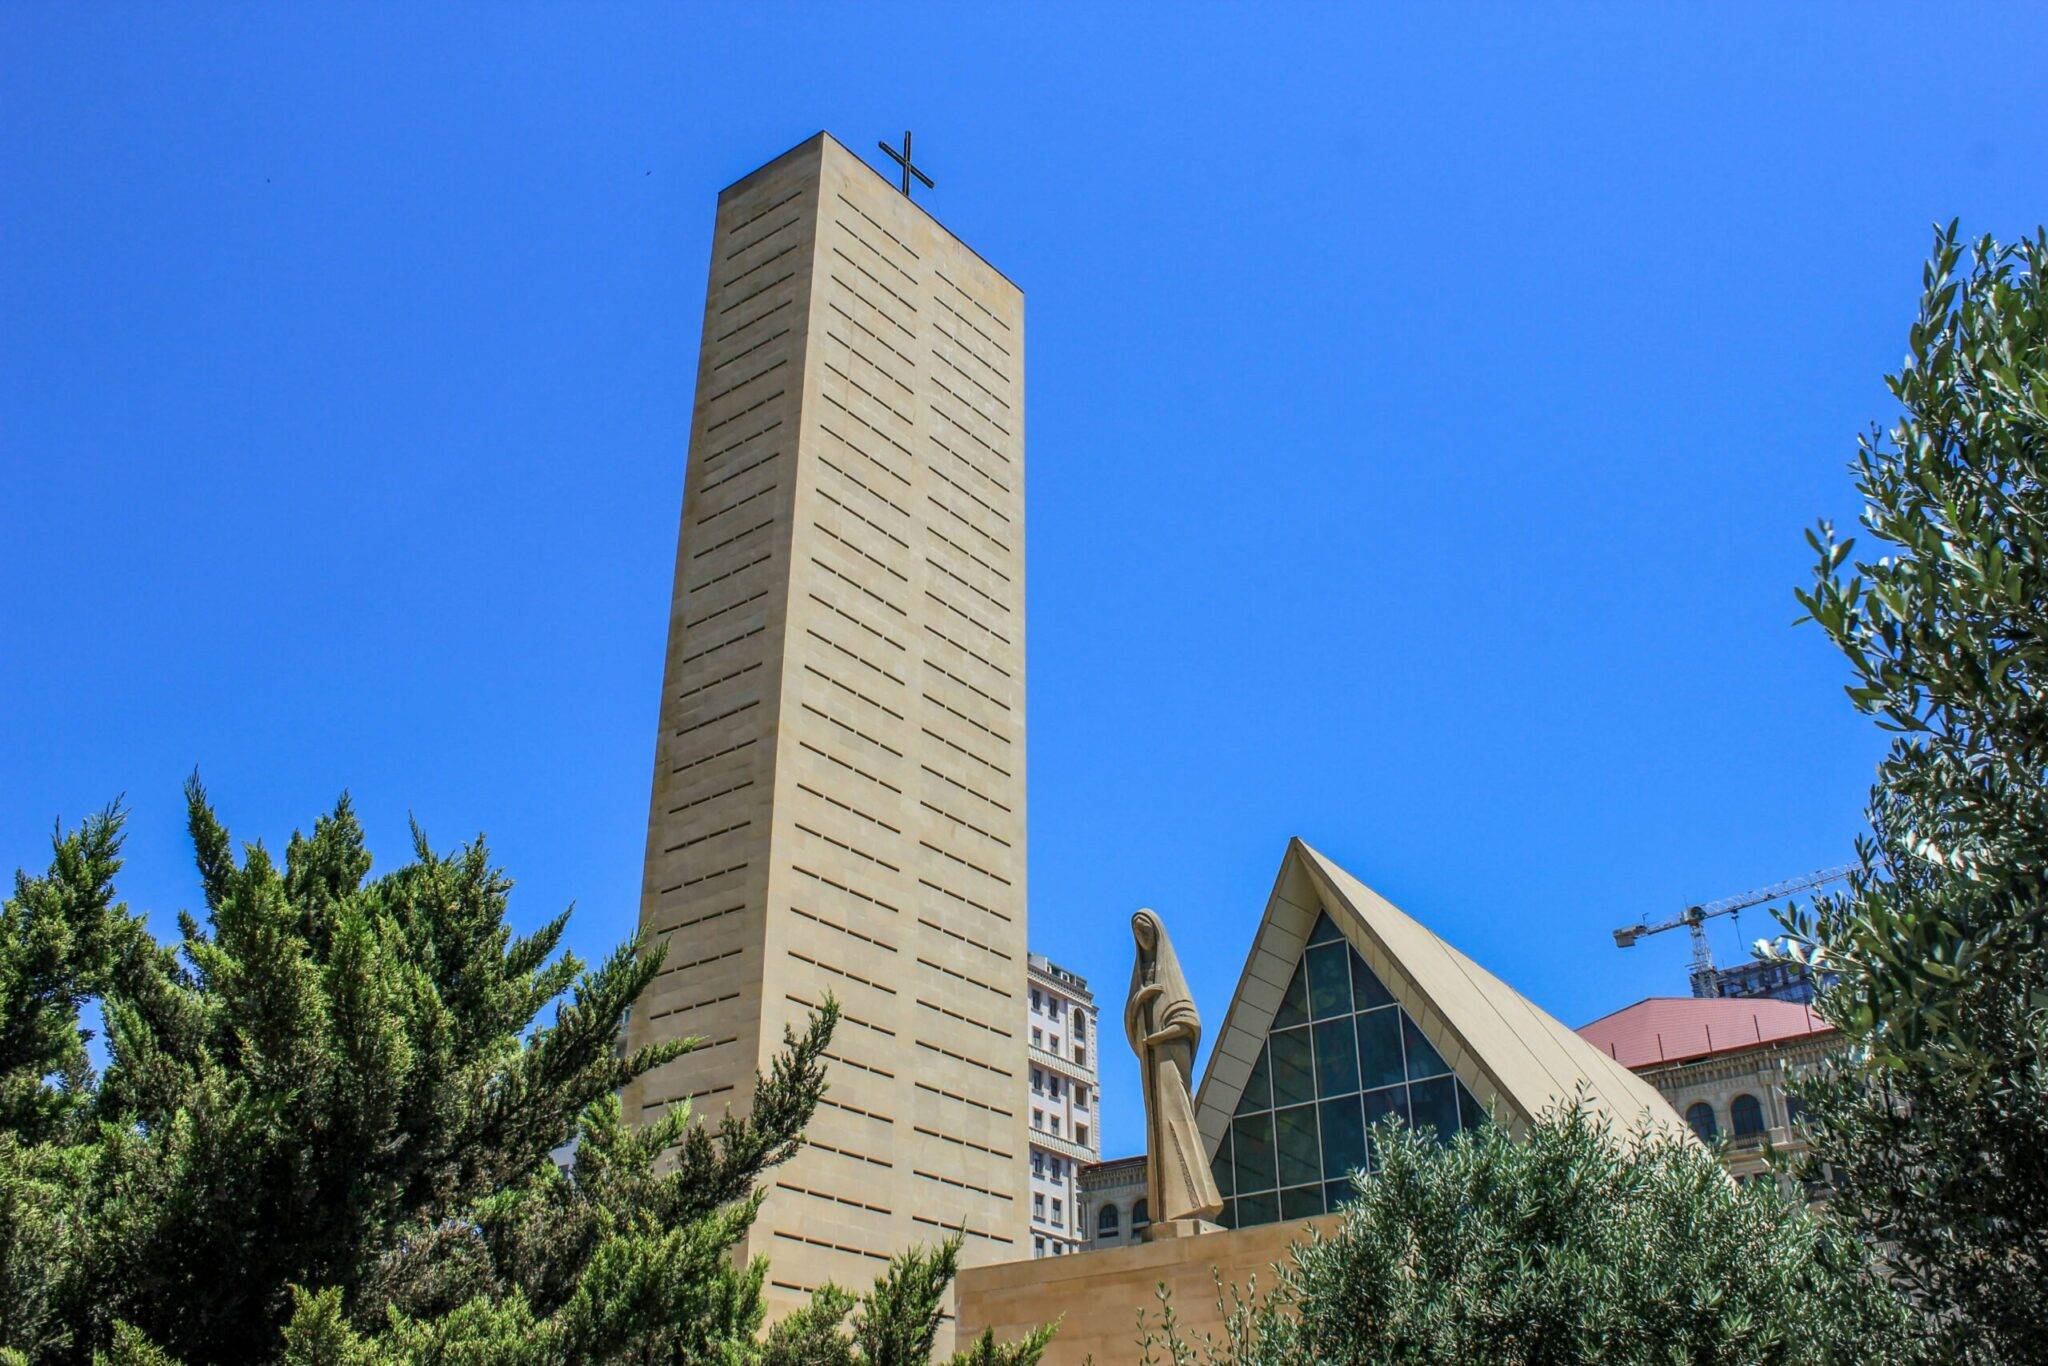 Kirche der Unbefleckten Empfängnis der Hl. Jungfrau Maria in Baku — Katholische Kirche in Aserbaidschan